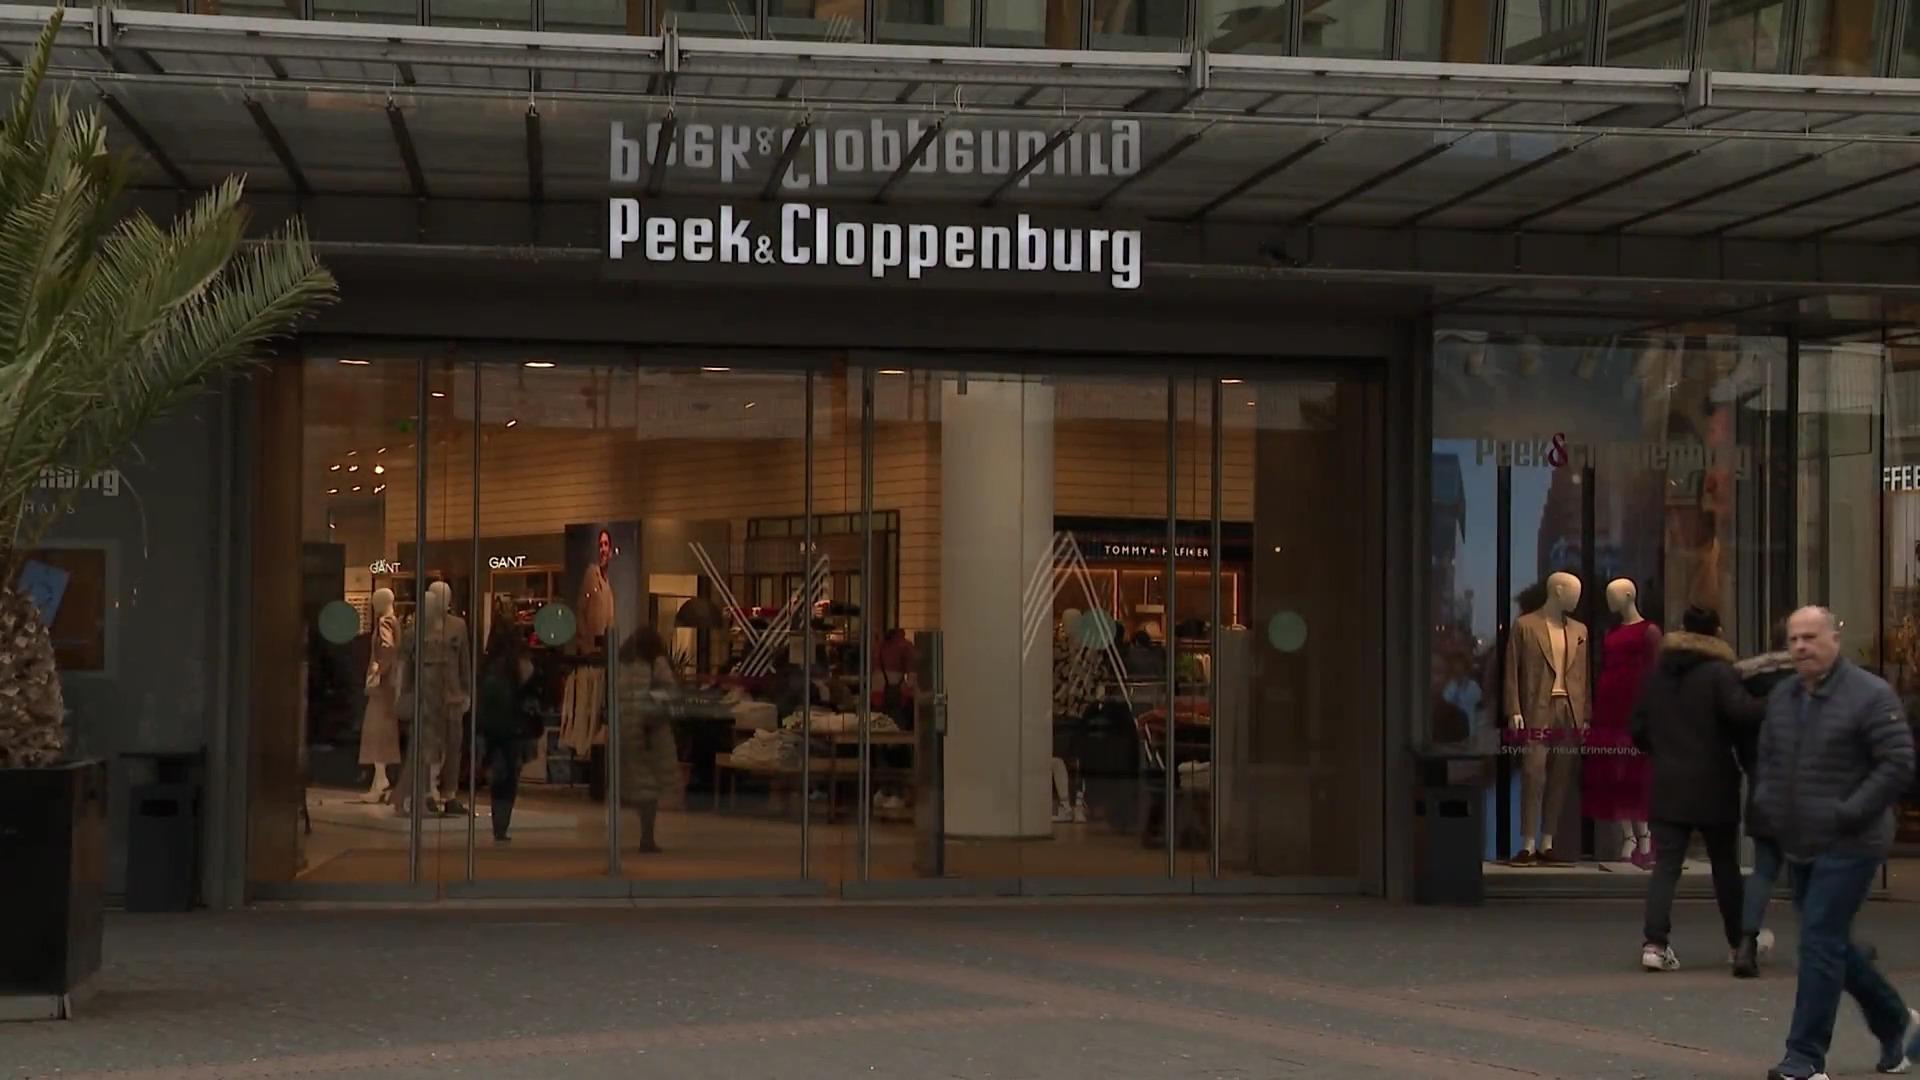 Peek & Cloppenburg muss Insolvenz anmelden Modehändler in der Krise